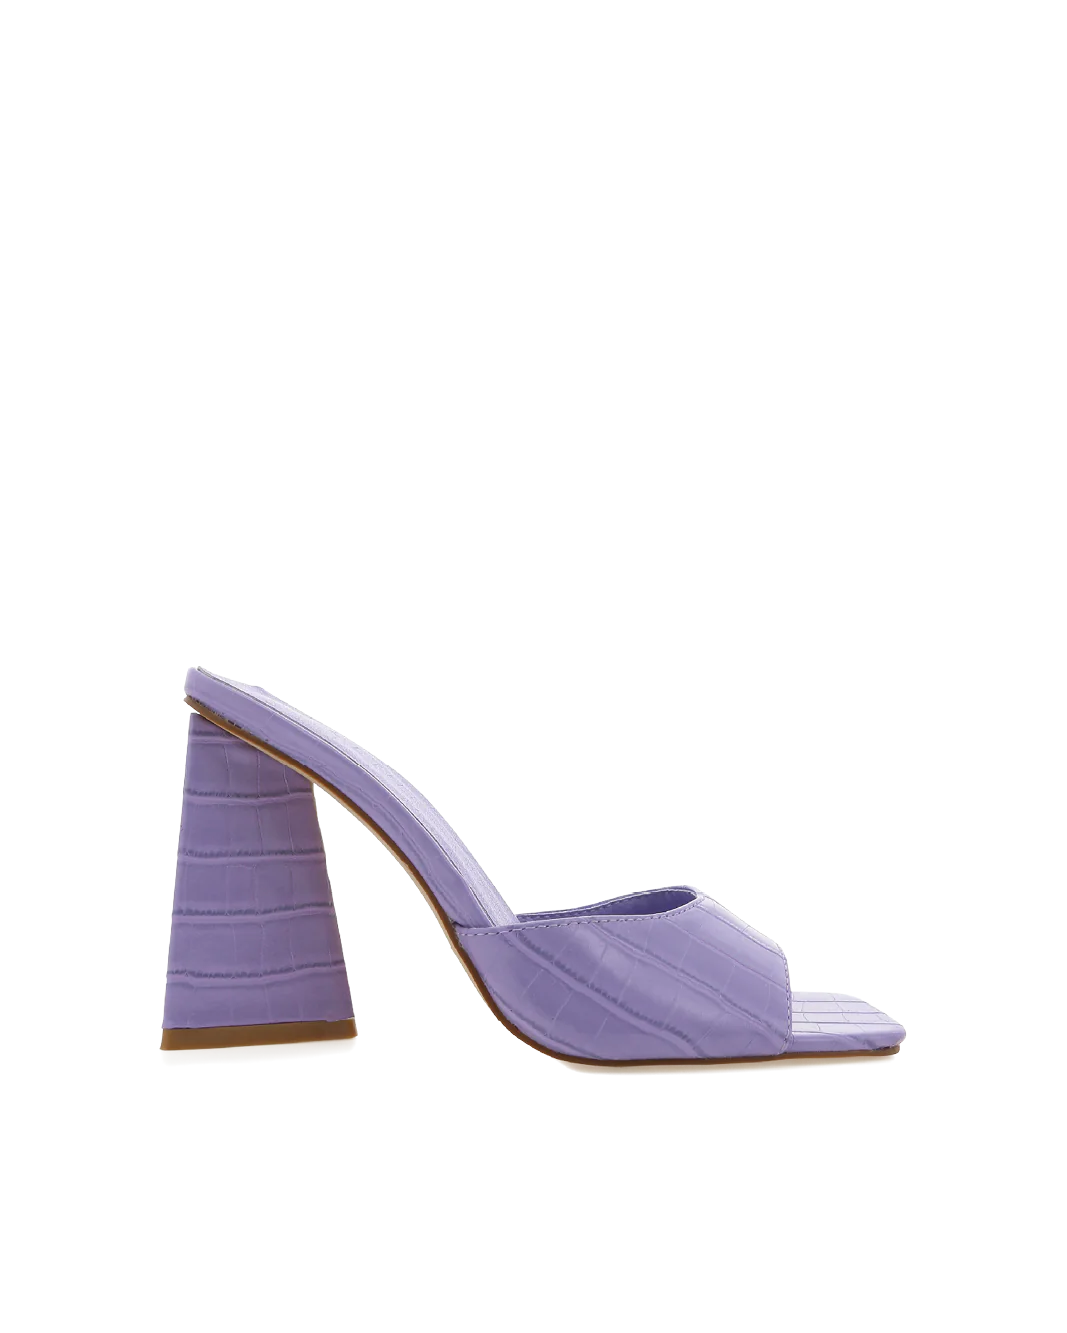 Quinn Croc Slide Lavender, Shoes by Billini | LIT Boutique